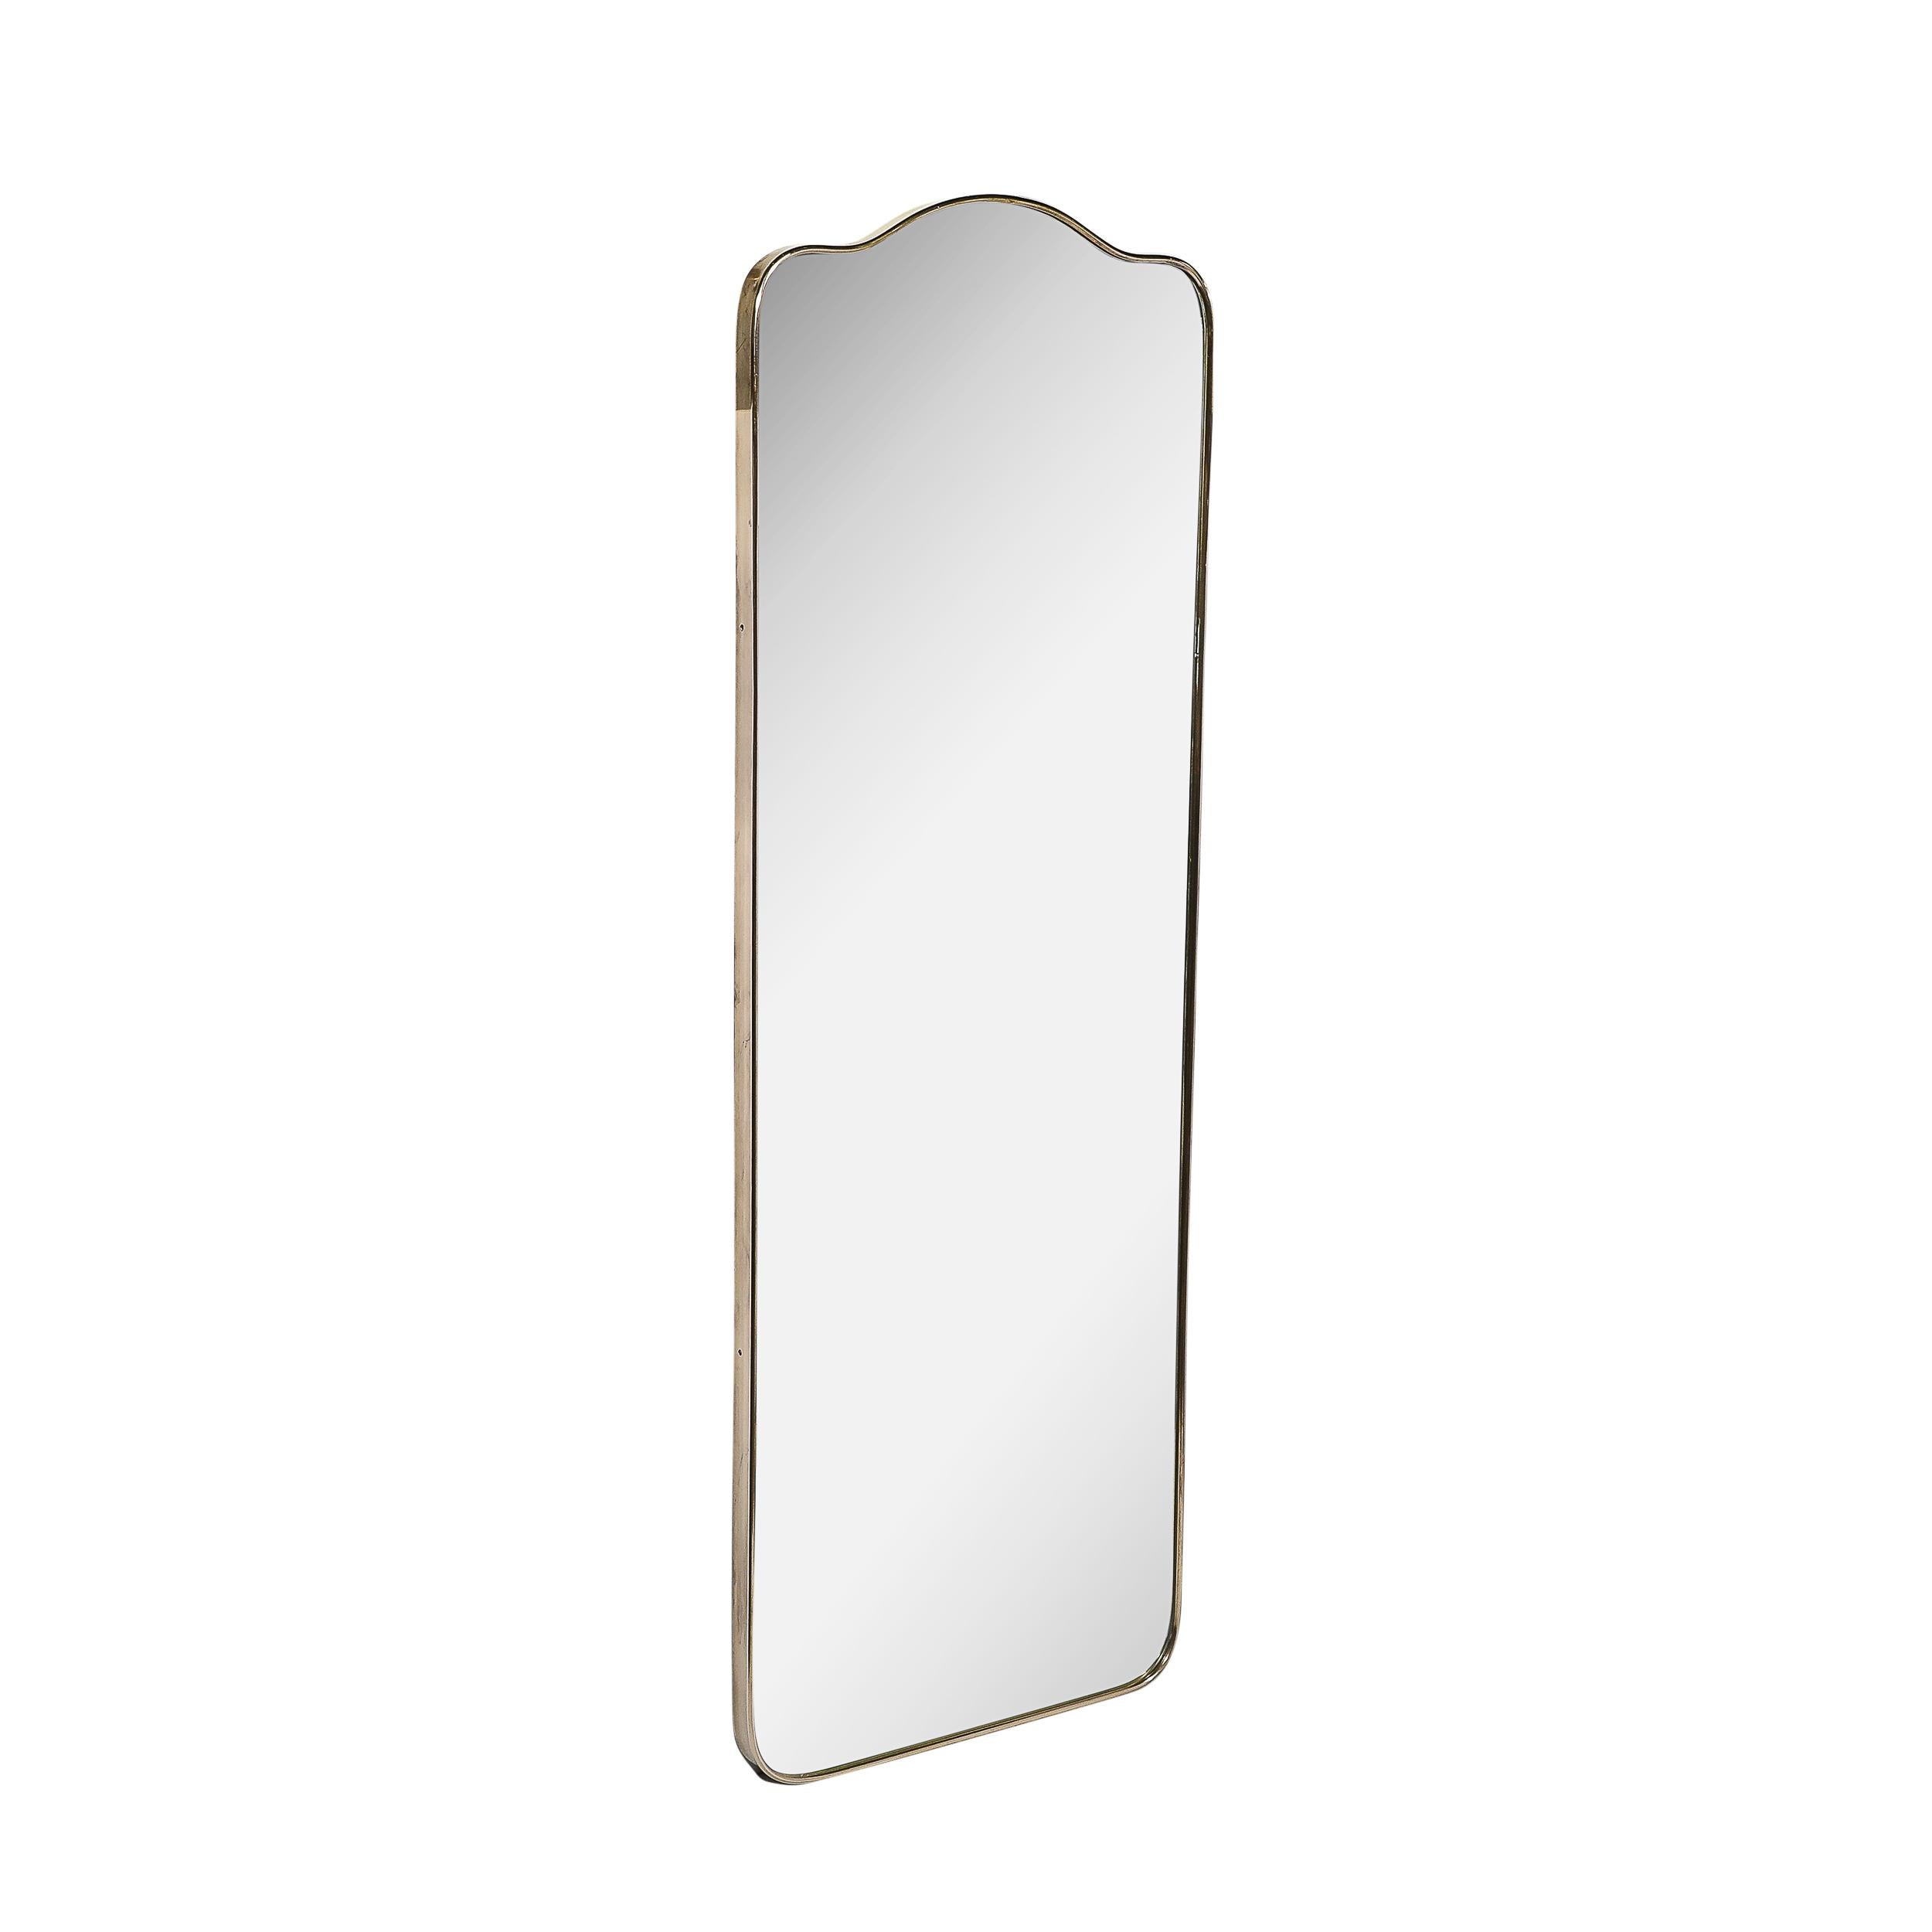 Ce miroir vertical minimaliste et magnifiquement réalisé, de style moderniste du milieu du siècle, enveloppé de laiton et orné d'un arc arrondi, provient d'Italie, vers 1960. Elle présente une silhouette étonnante avec un beau motif d'arcs courbes